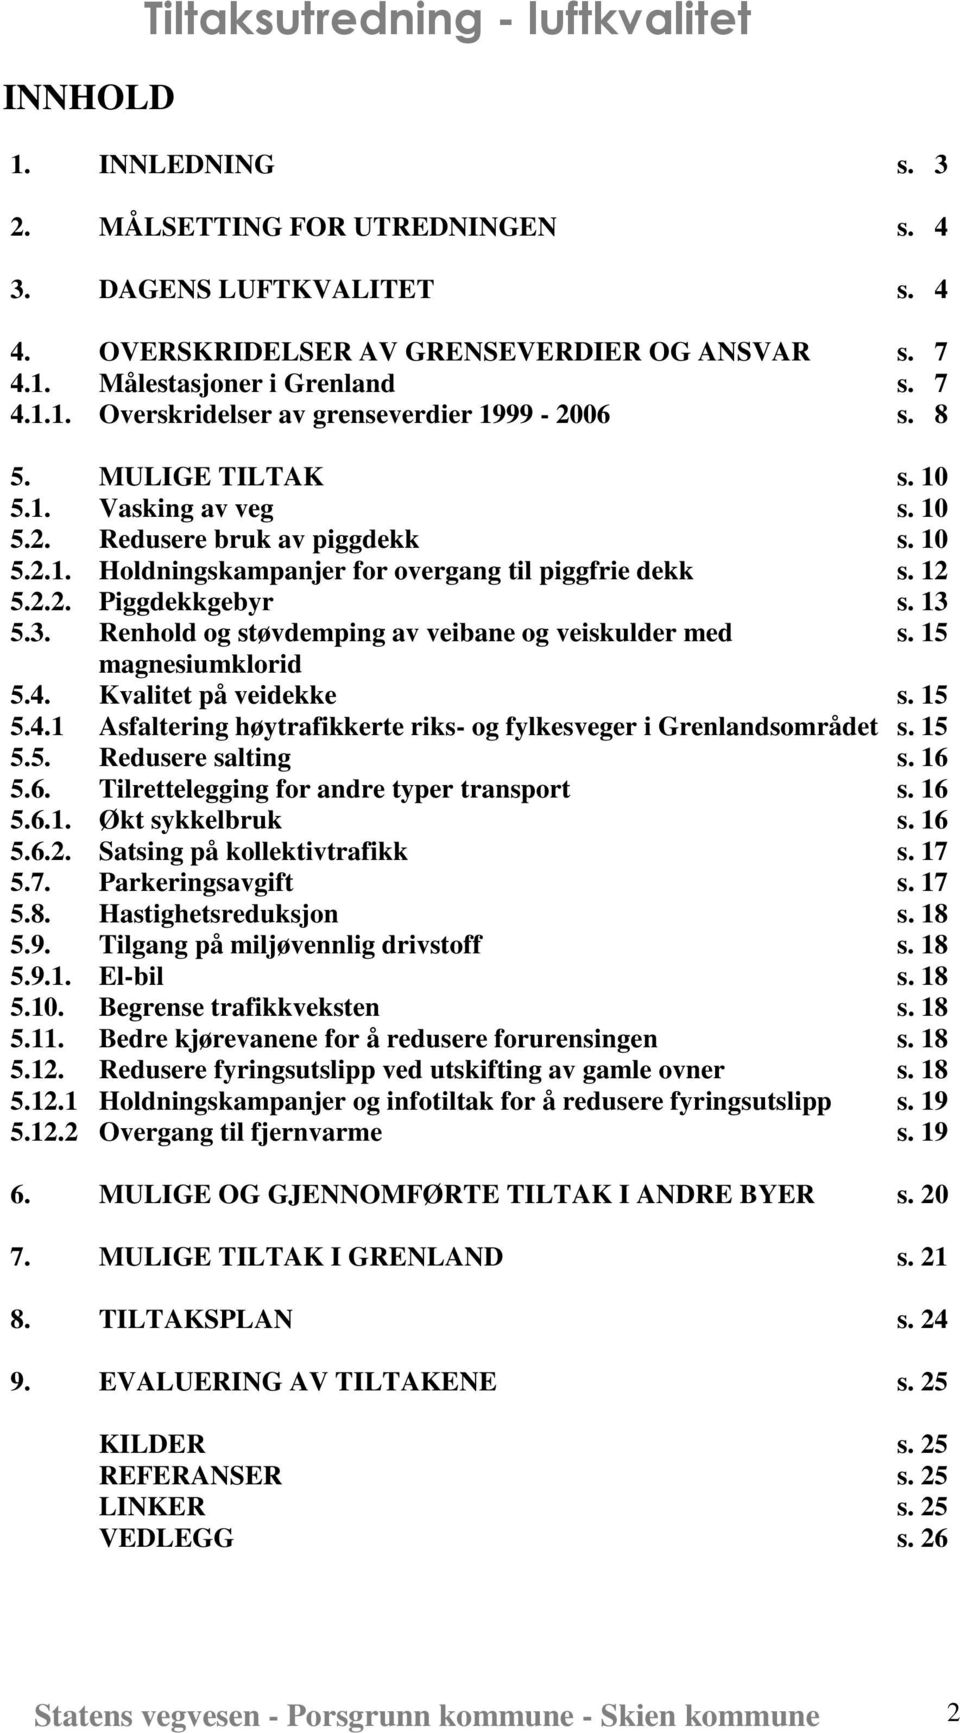 12 5.2.2. Piggdekkgebyr s. 13 5.3. Renhold og støvdemping av veibane og veiskulder med s. 15 magnesiumklorid 5.4. Kvalitet på veidekke s. 15 5.4.1 Asfaltering høytrafikkerte riks- og fylkesveger i Grenlandsområdet s.